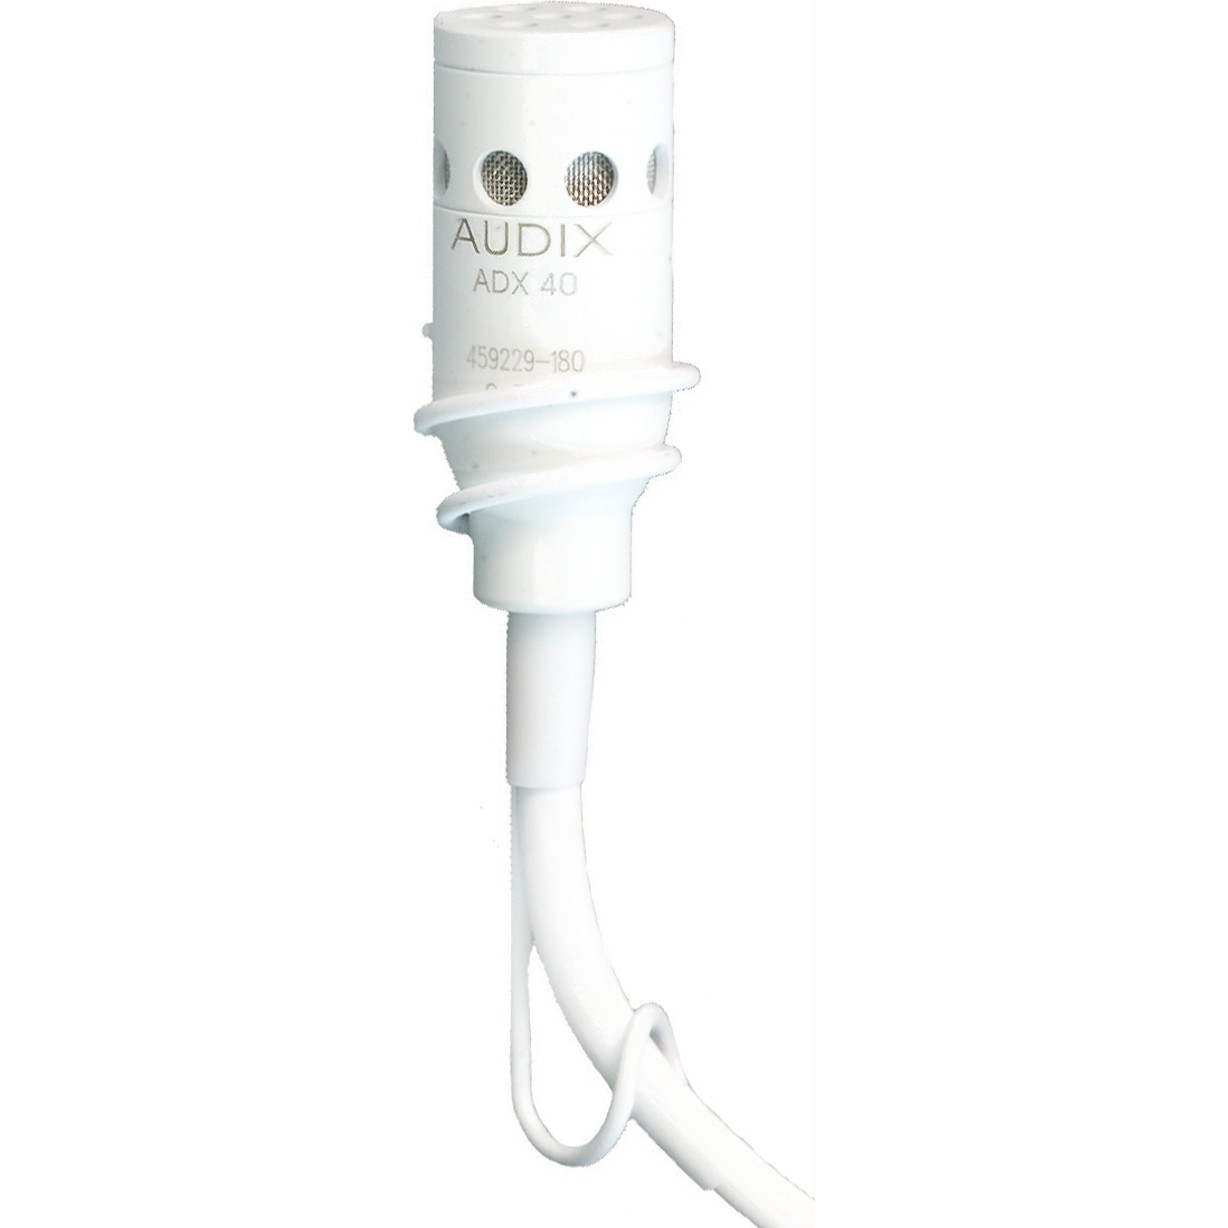 Студийные микрофоны AUDIX ADX40W микрофон mobicent bm 800 c ветрозащитой кабелем и переходником для телефона